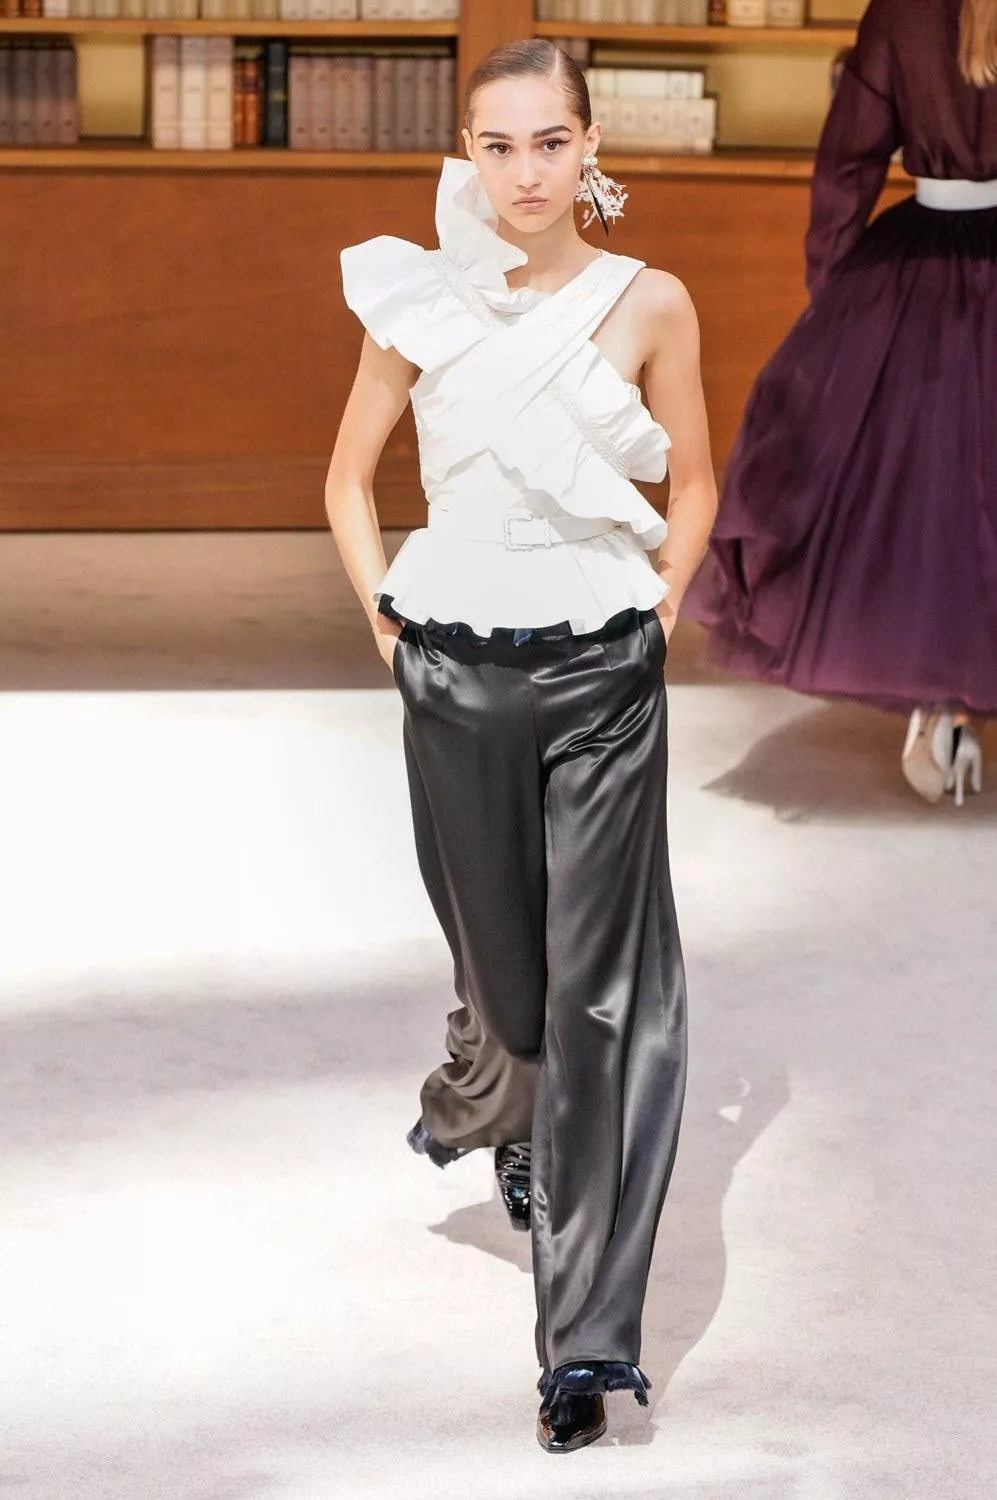 مجموعة Chanel للخياطة الراقية لخريف 2019: الطابع الشبابي يسيطر بخفّة وأنوثة منكّهاً بلمسة الدار الأيقونية